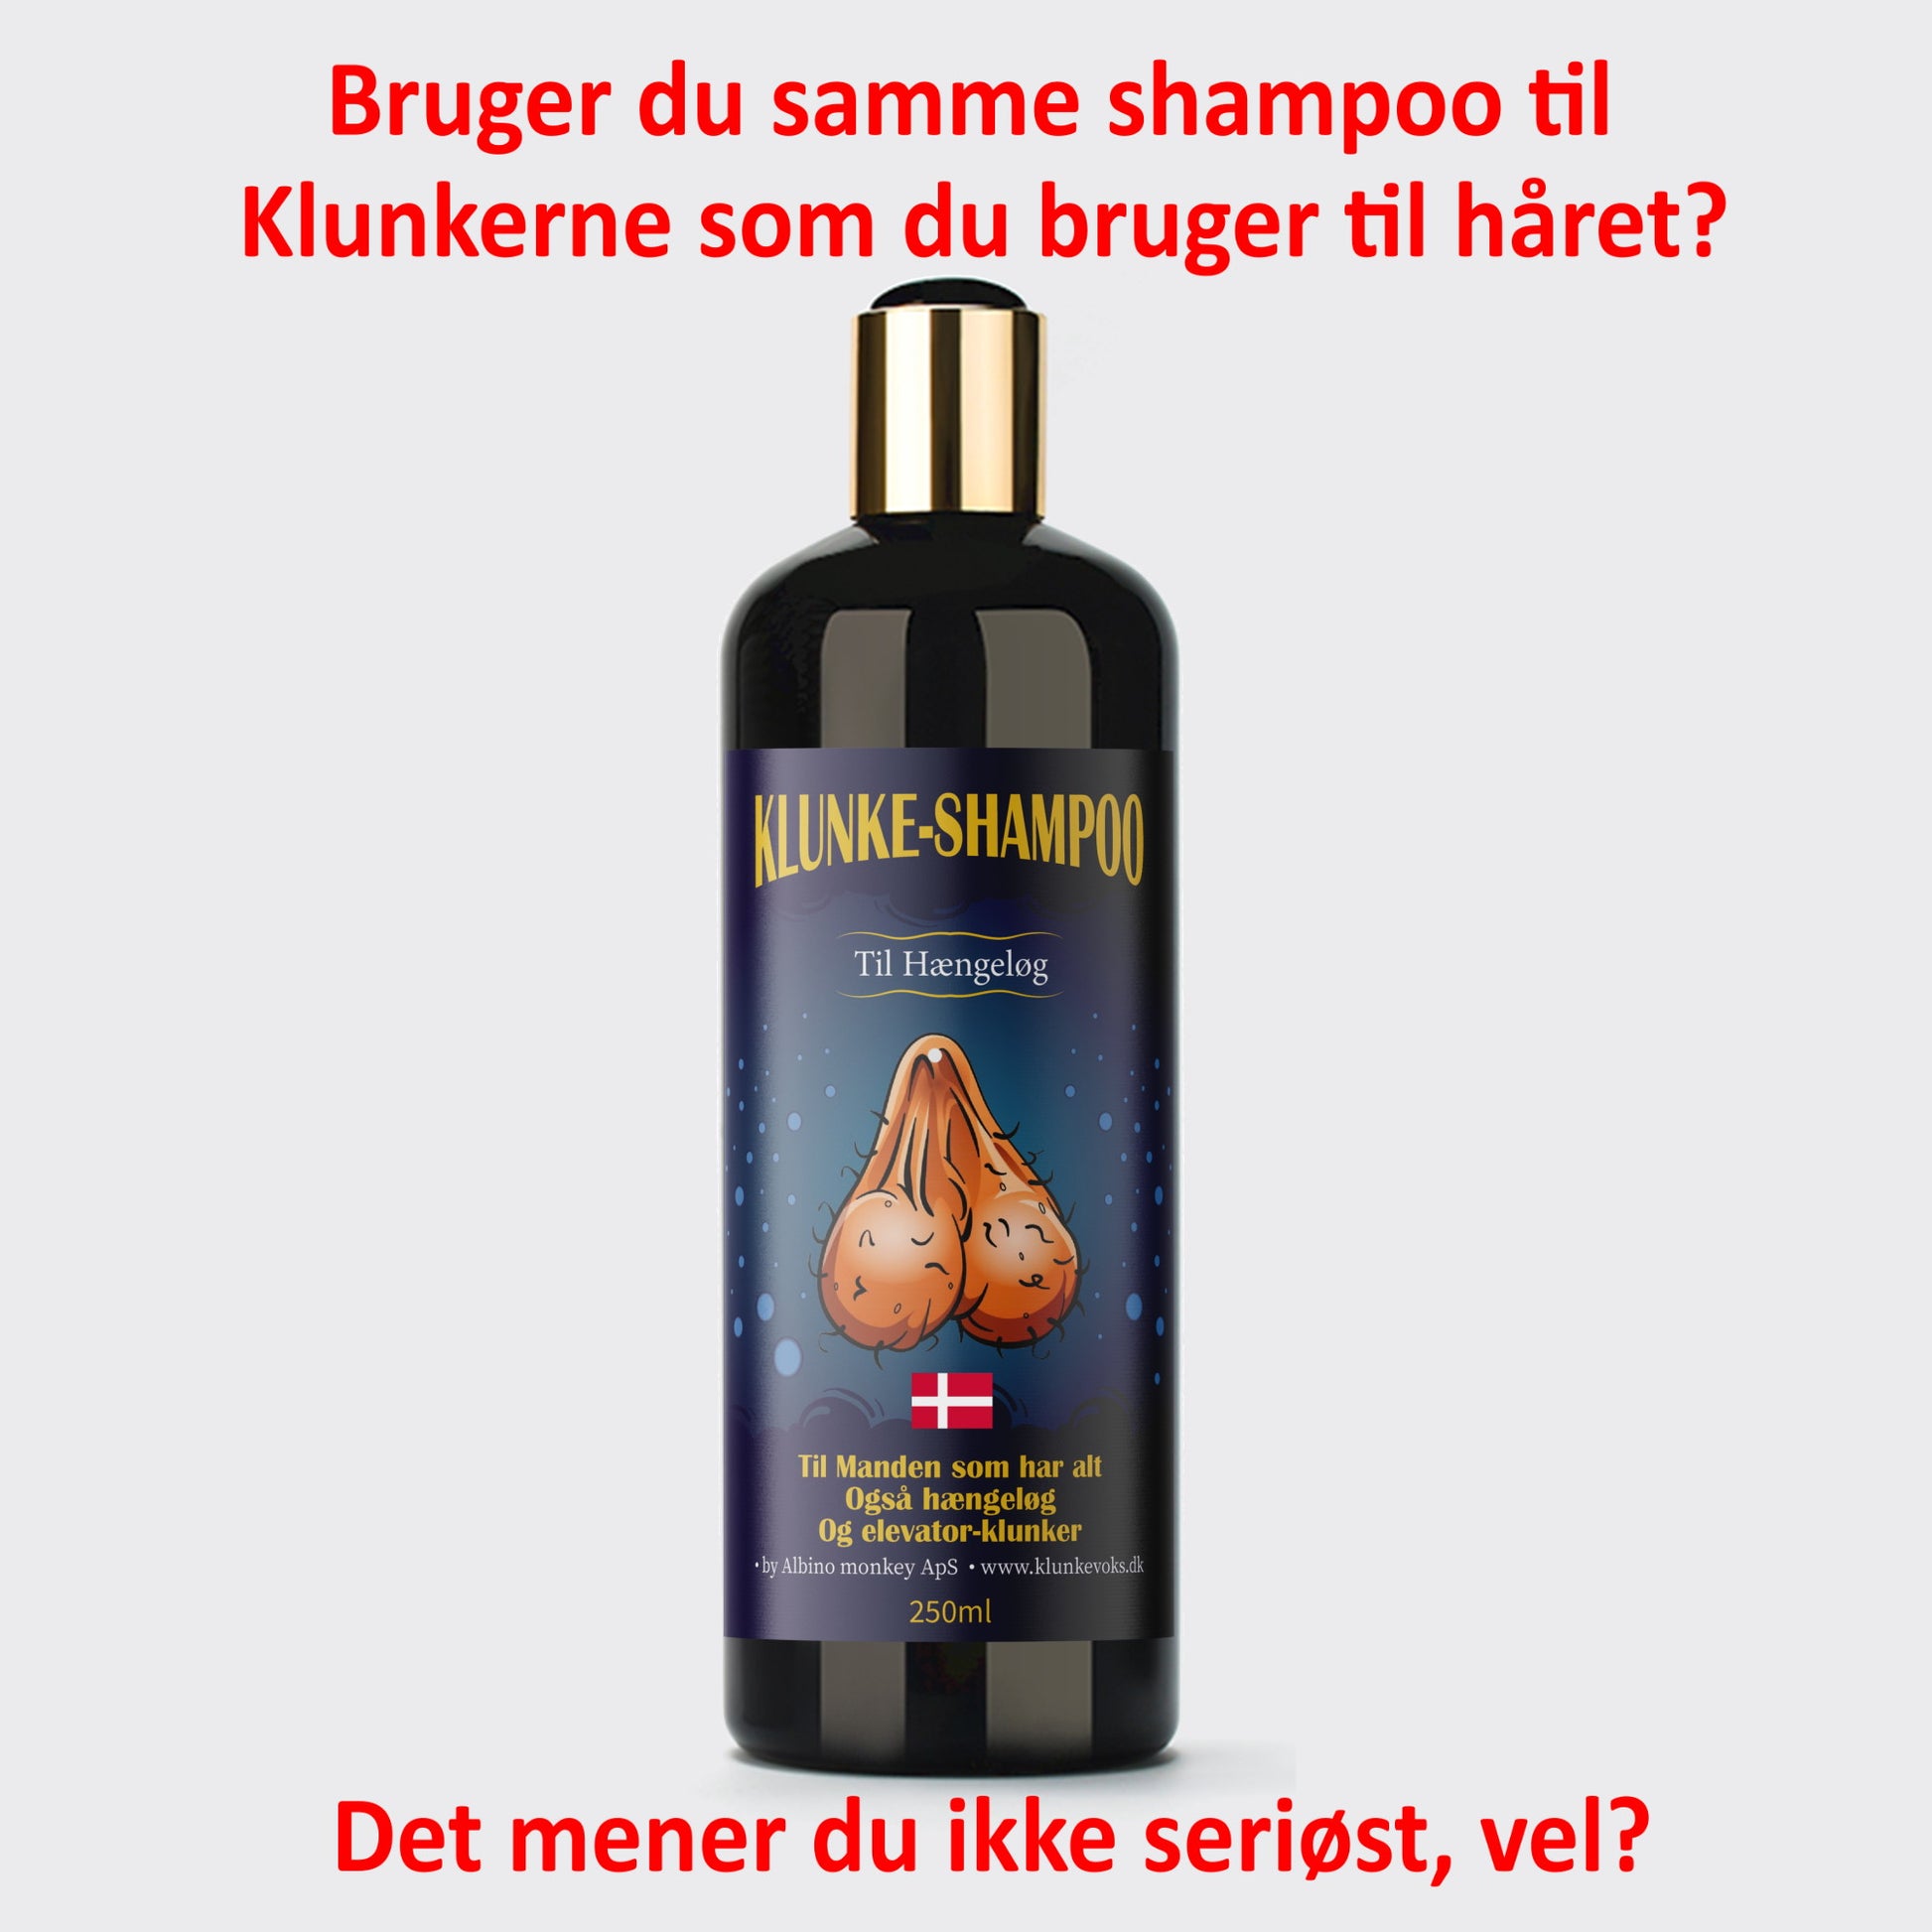 Klunke Shampoo Til Hængeløg - klunkevoks.dk